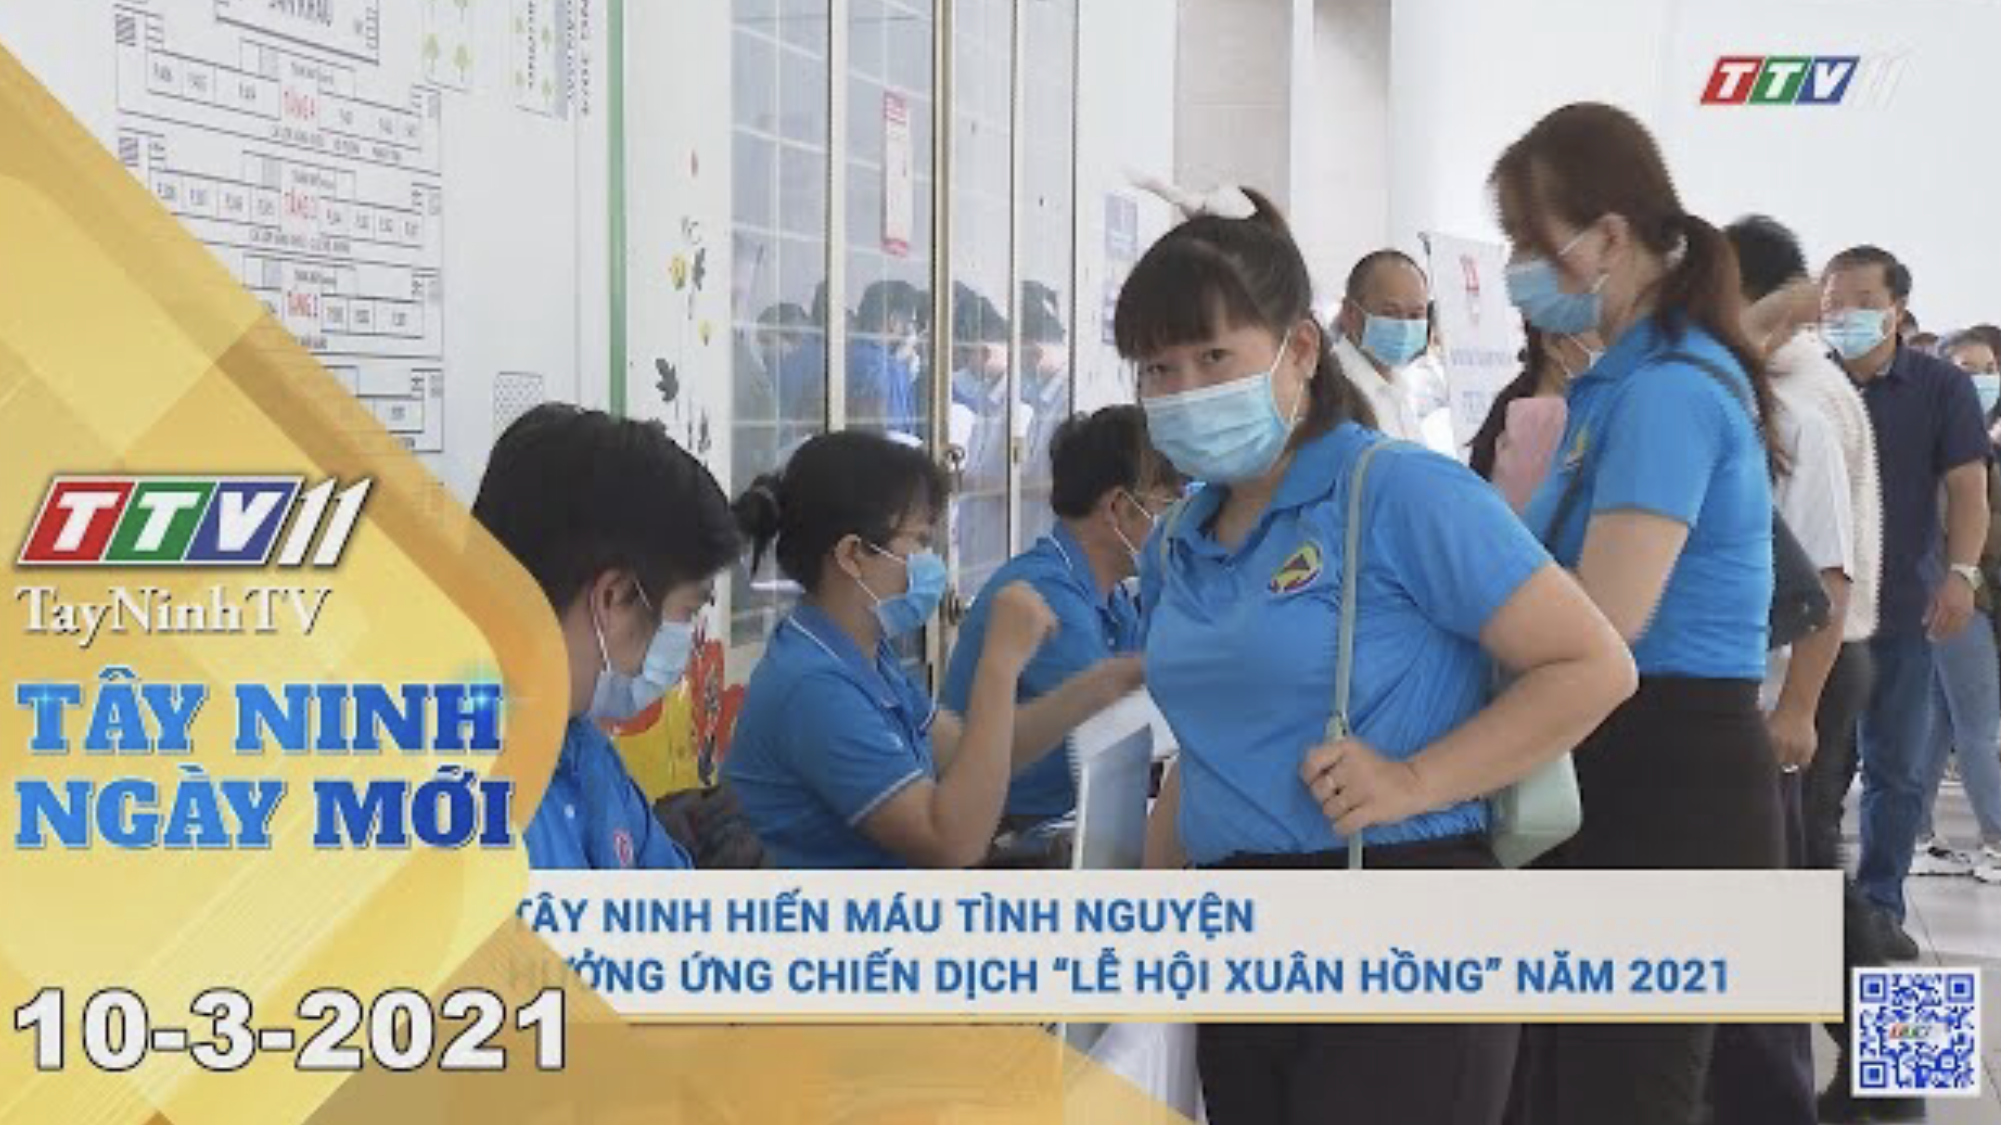 Tây Ninh Ngày Mới 10-3-2021 | Tin tức hôm nay | TayNinhTV